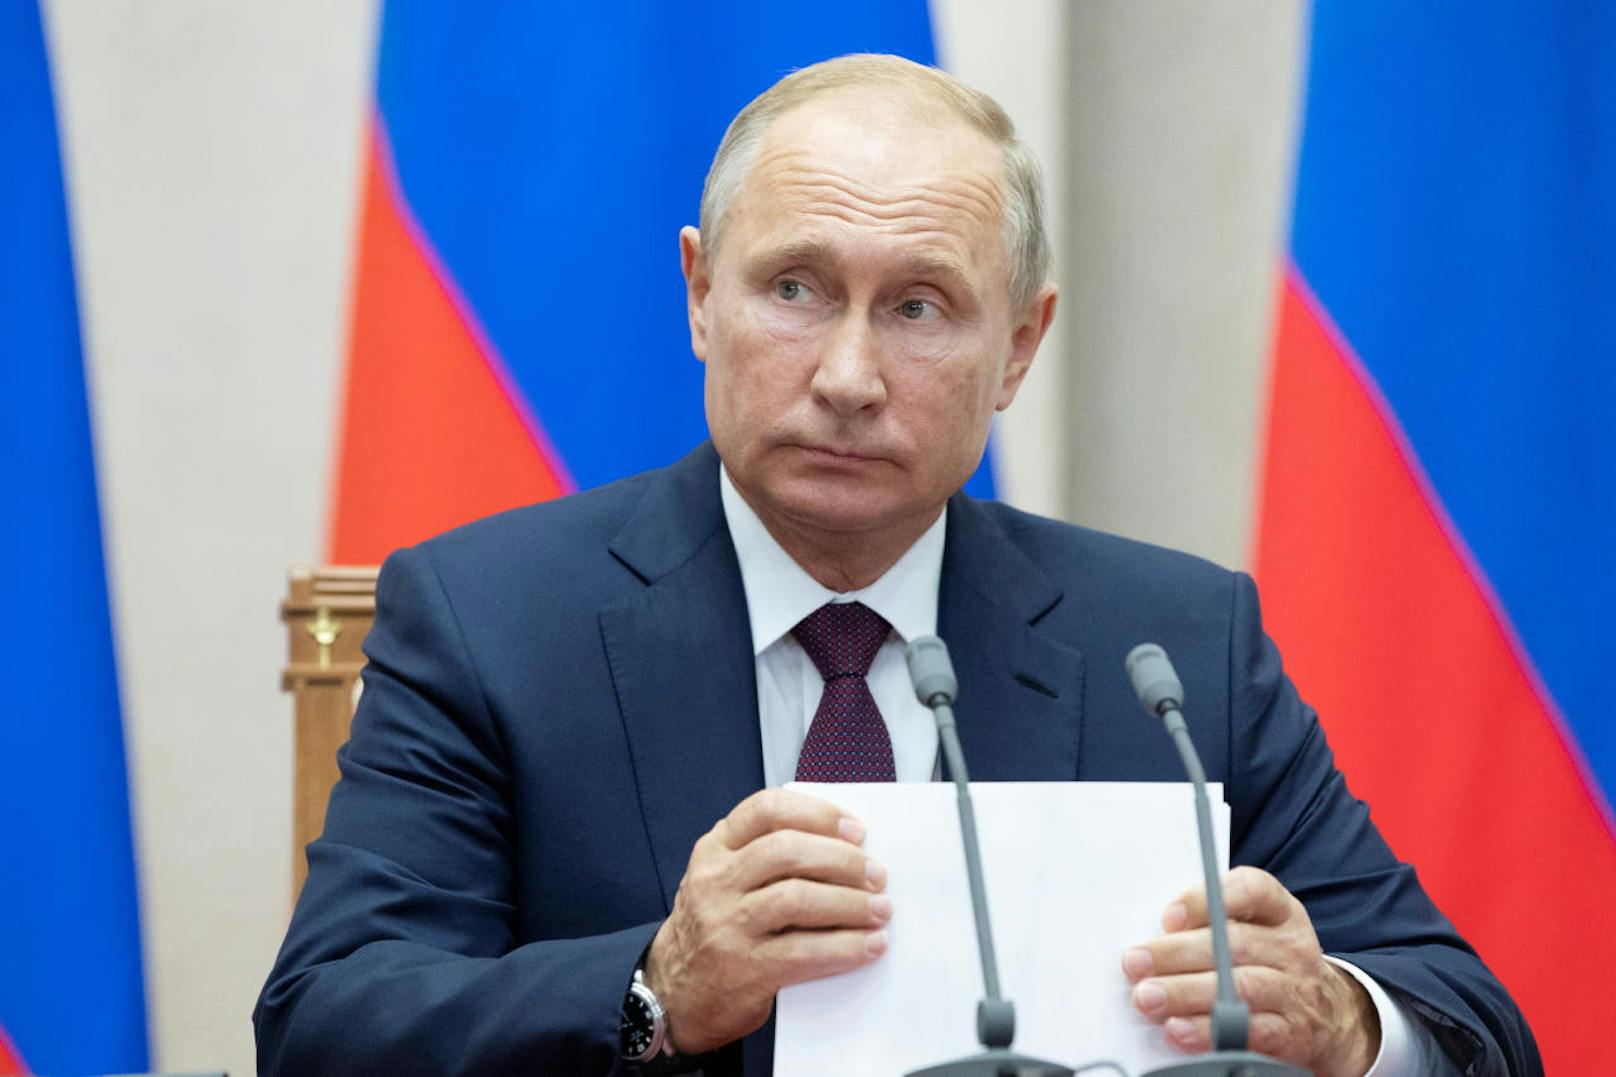 <b>Platz 4: Russland</b>
Russlands Präsident Wladimir Putin verfehlt mit einem jährliches Einkommen von <b>244.200 Euro</b> knapp das Stockerl. Ein durchschnittlicher Russe verdient im selben Zeitraum elfmal weniger, nämlich 21.600 Euro.